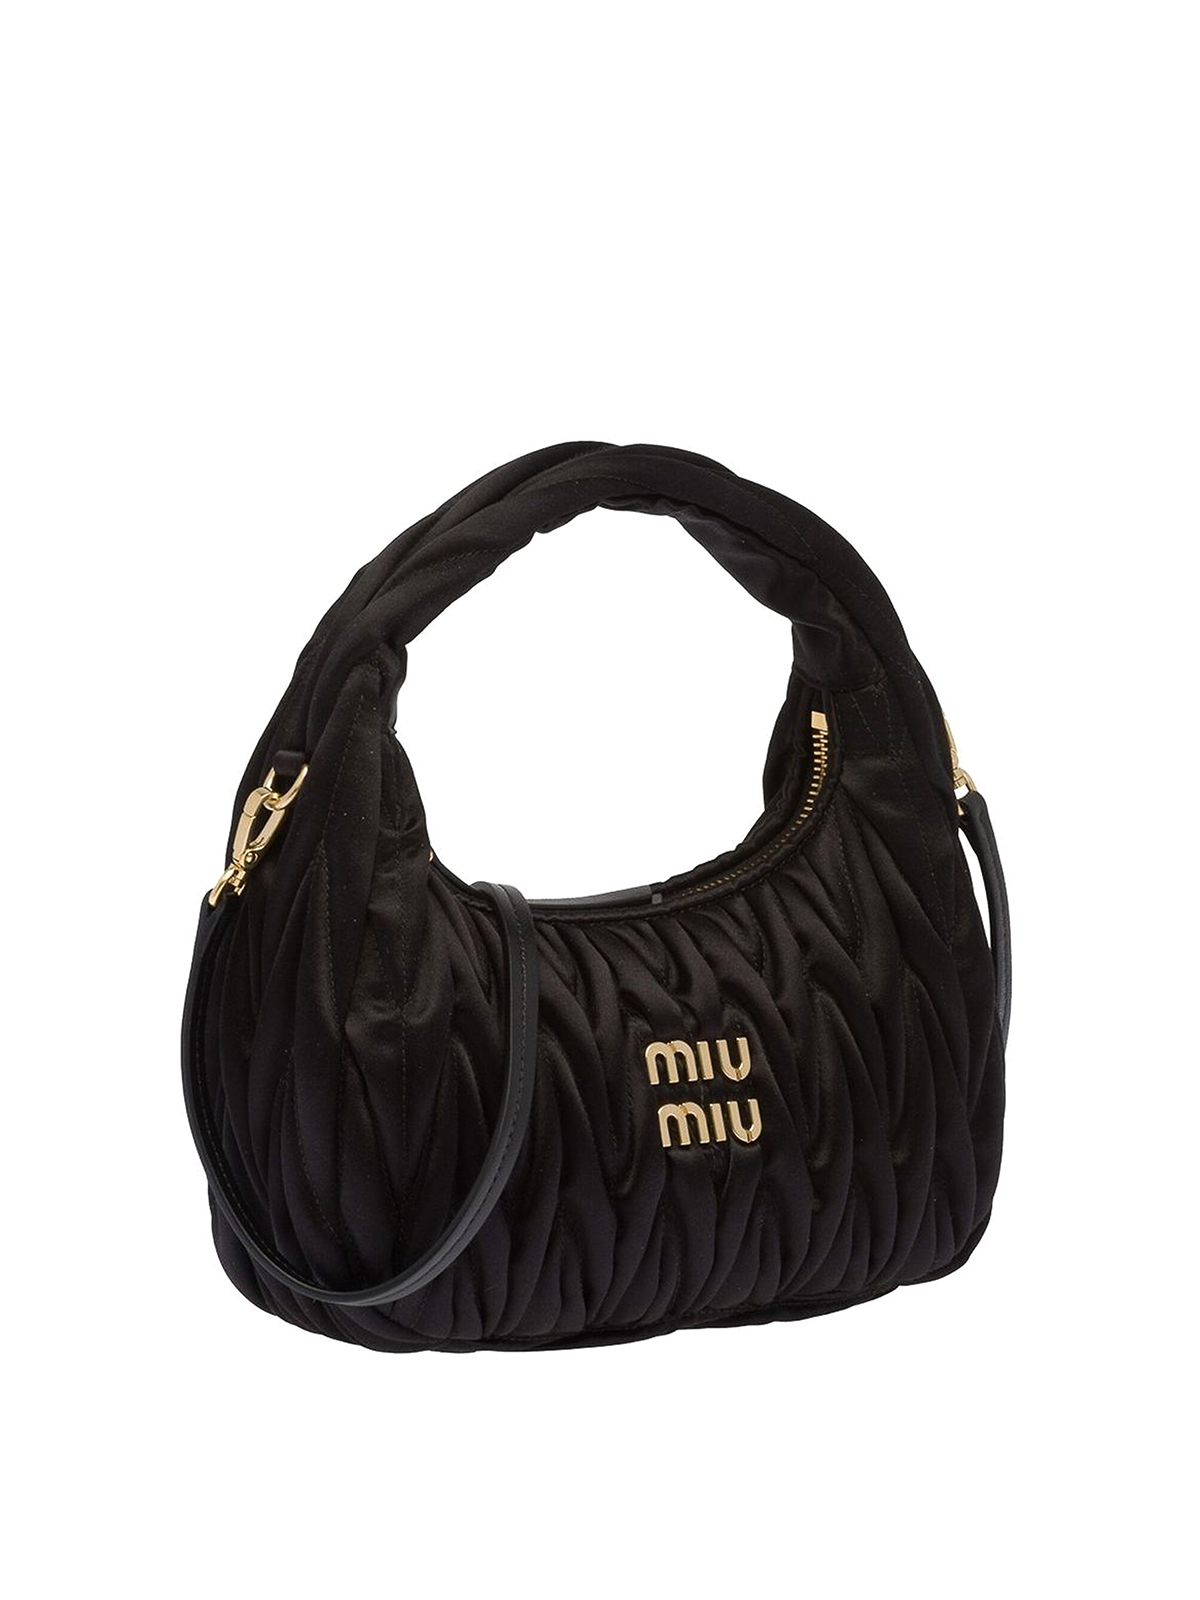 Miu Wander Matelasse Nylon Shoulder Bag in Black - Miu Miu